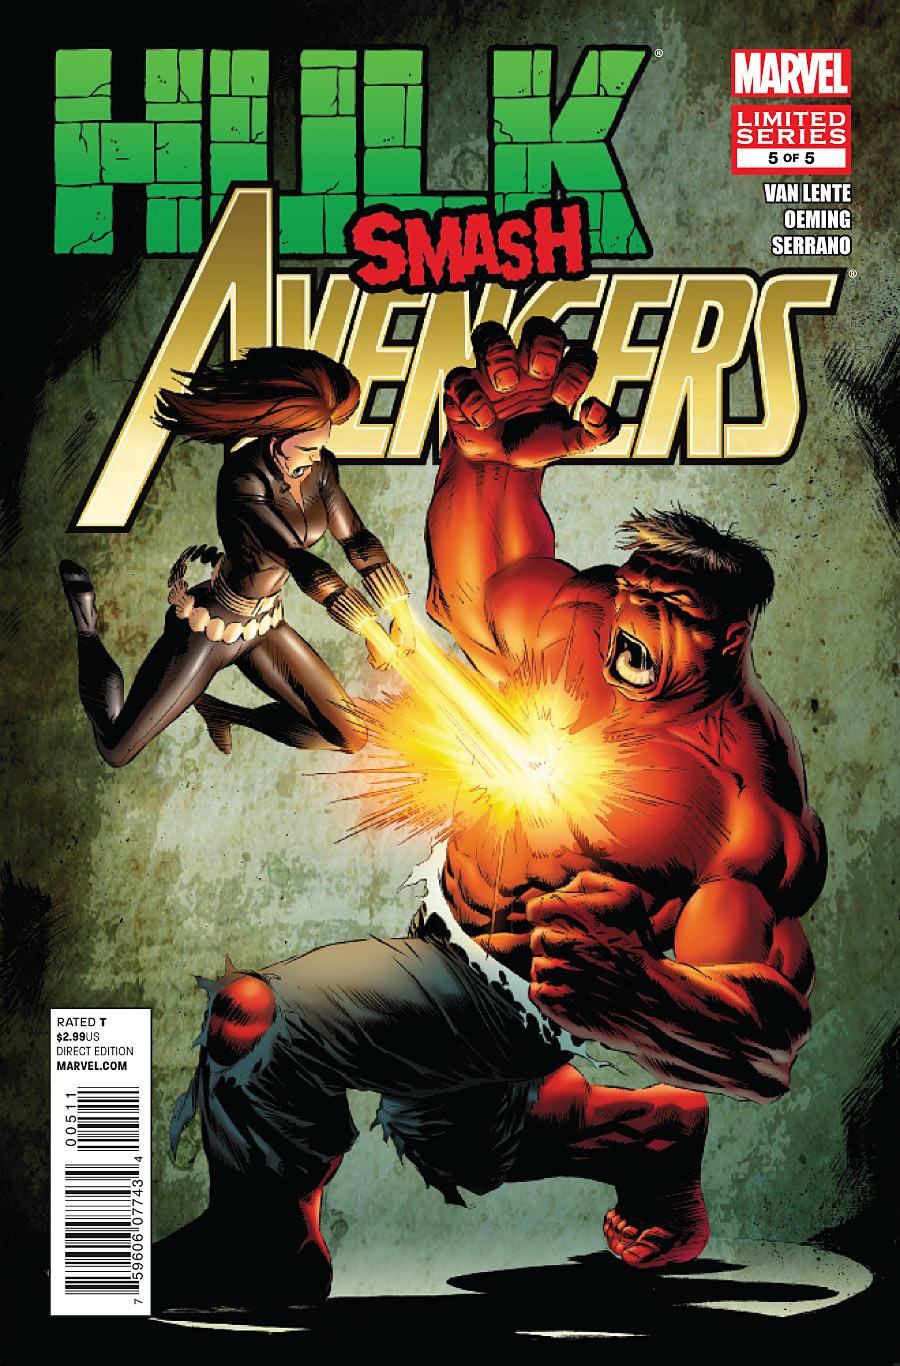 Hulk Smash Avengers Vol. 1 #5